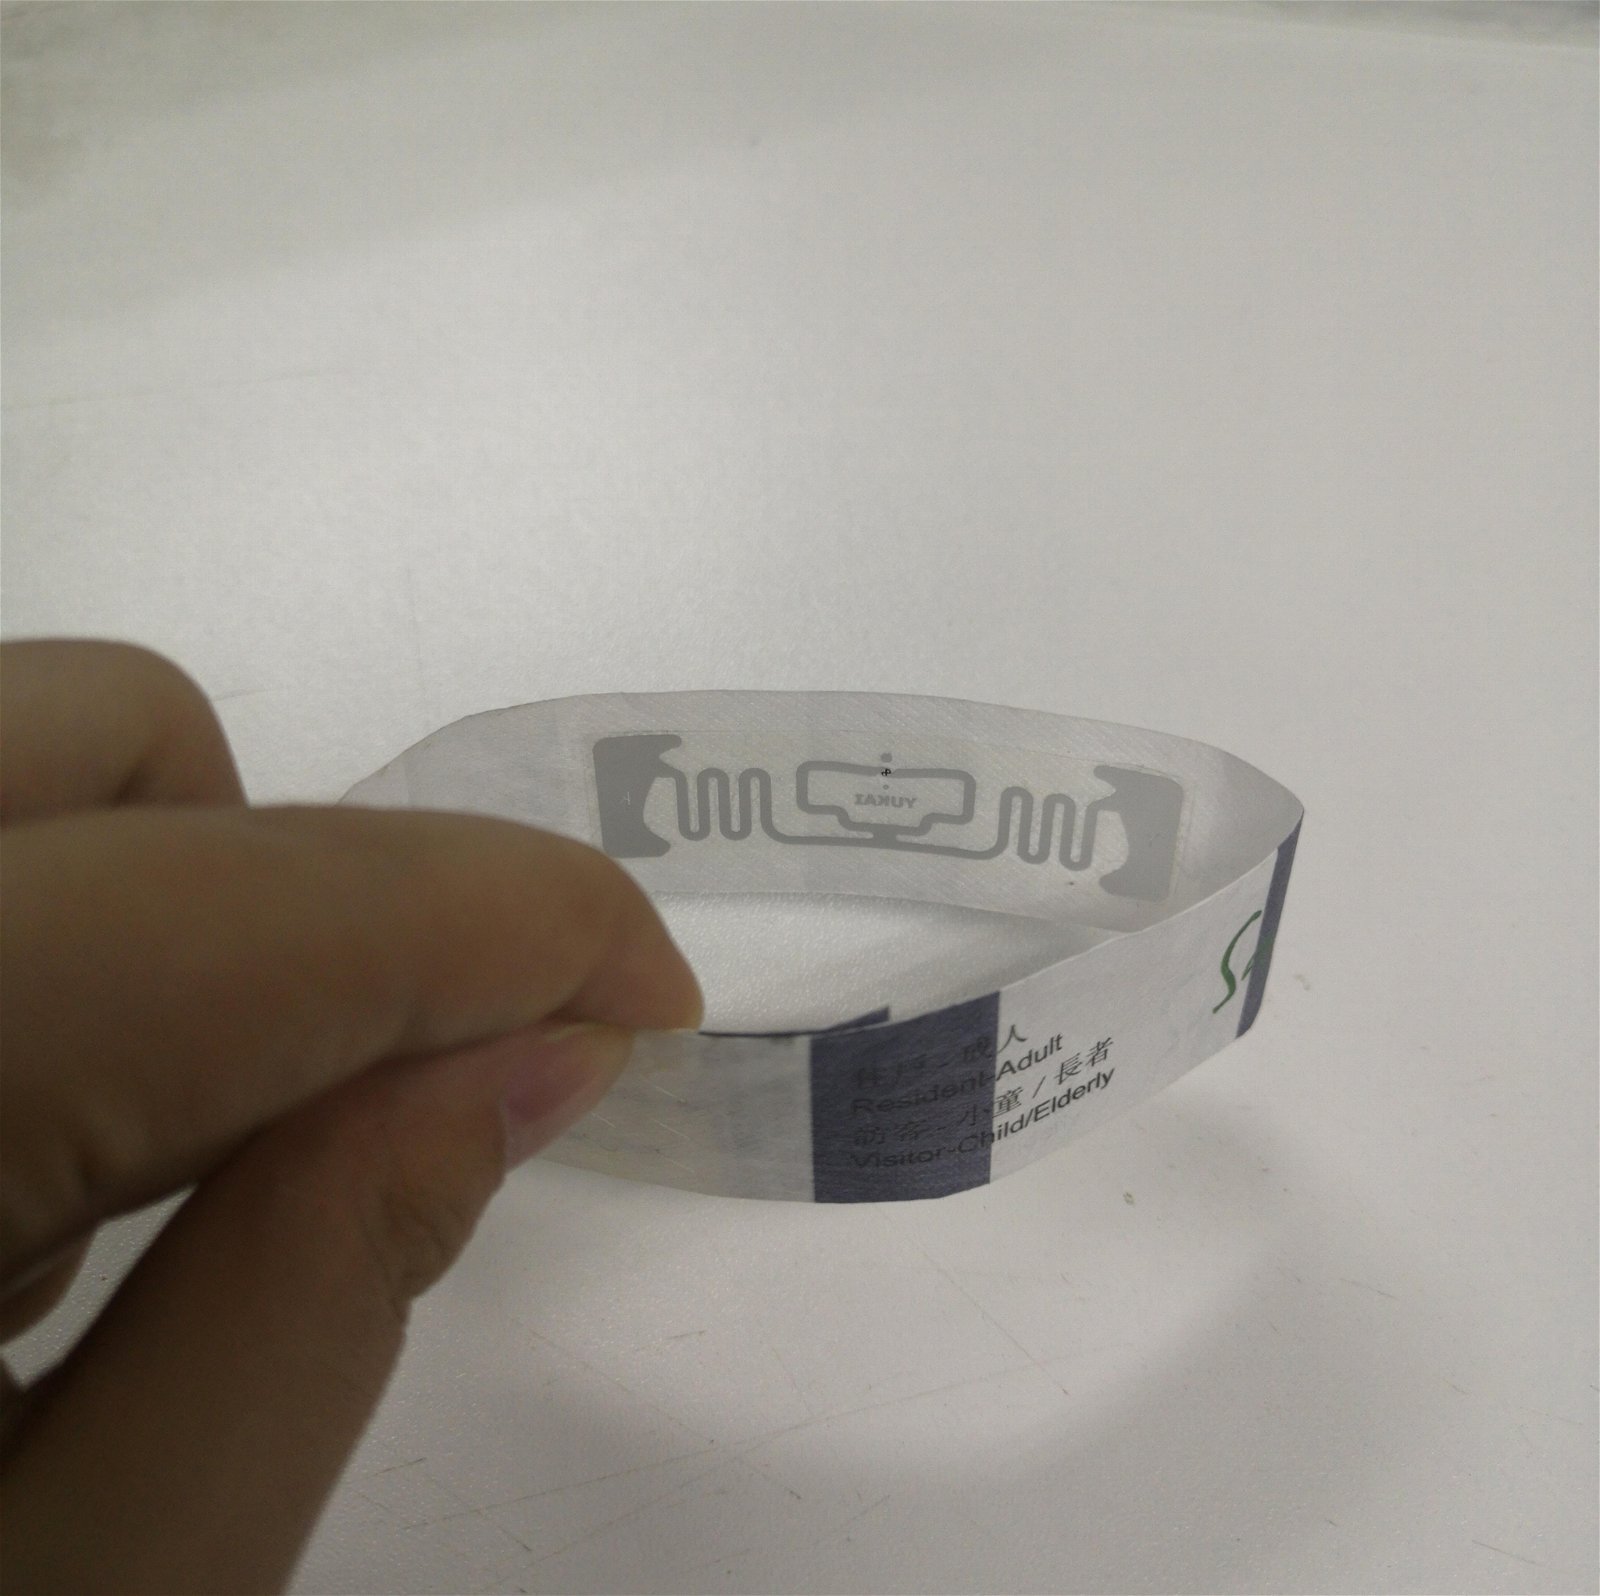 Smart Dupnt paper professional rfid uhf 900MHz bracelet tag 2